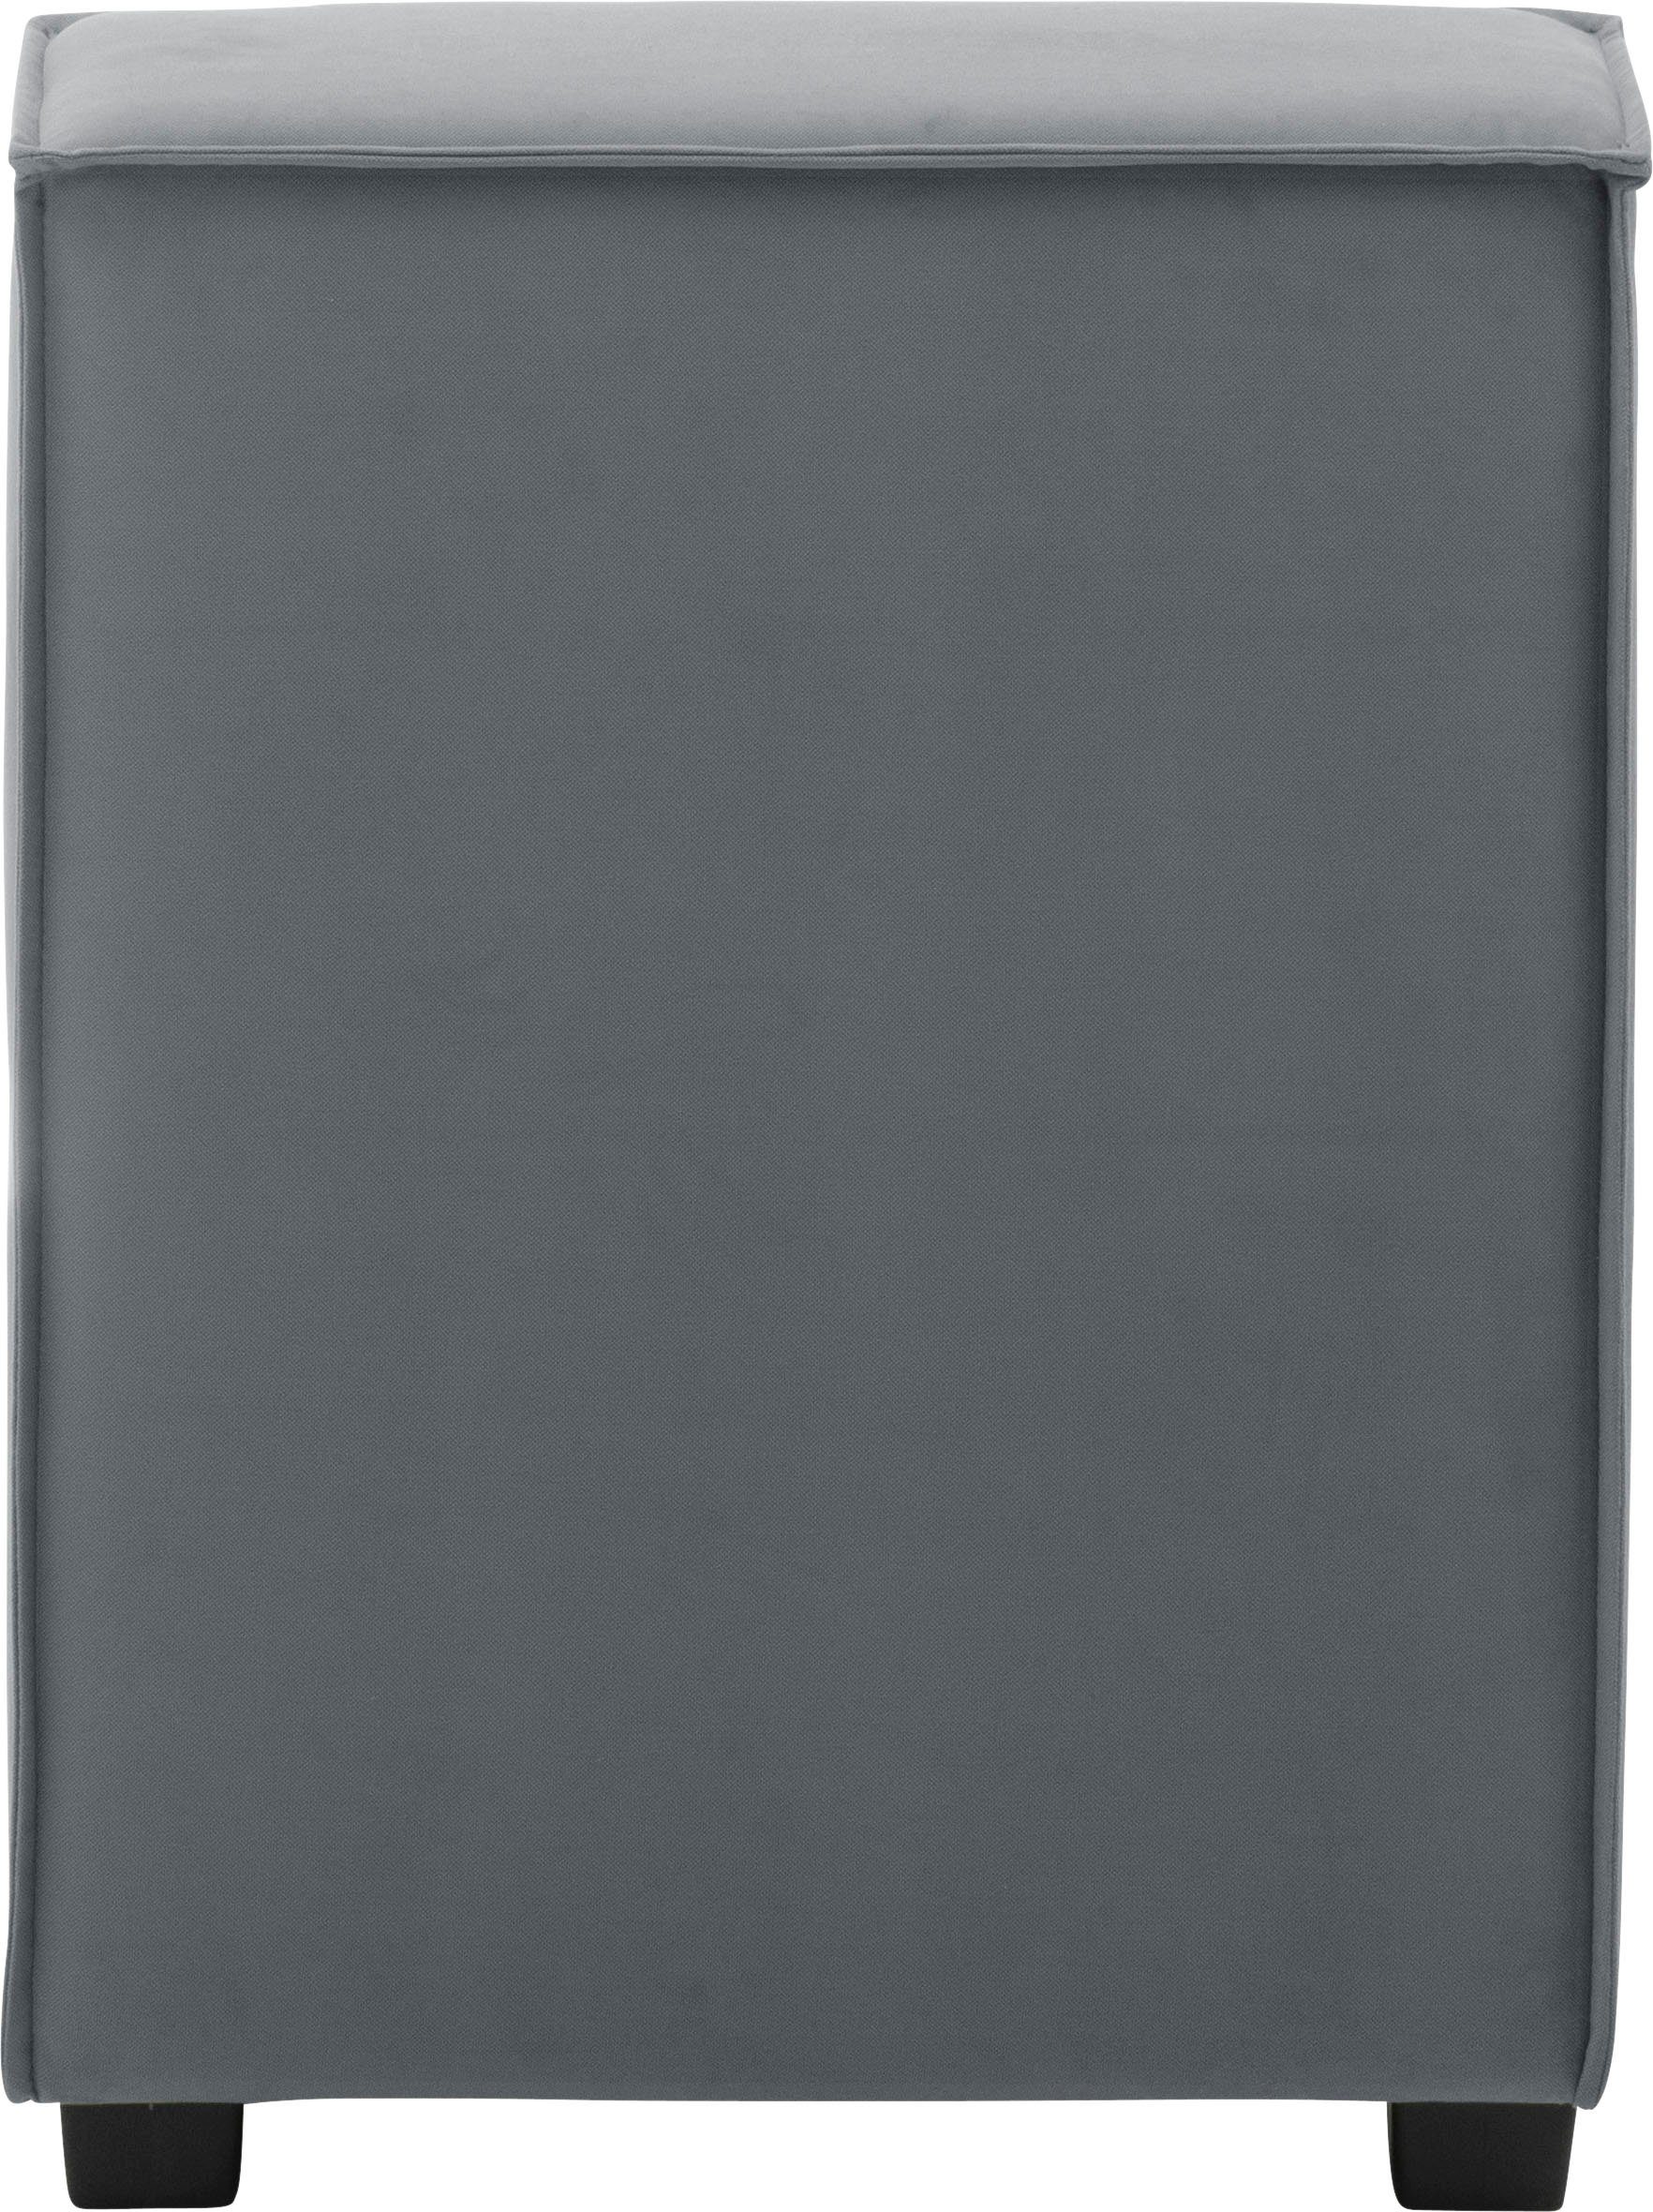 Max Winzer® Sofaelement MOVE, kombinierbar grau Einzelelement individuell 60/30/78 cm